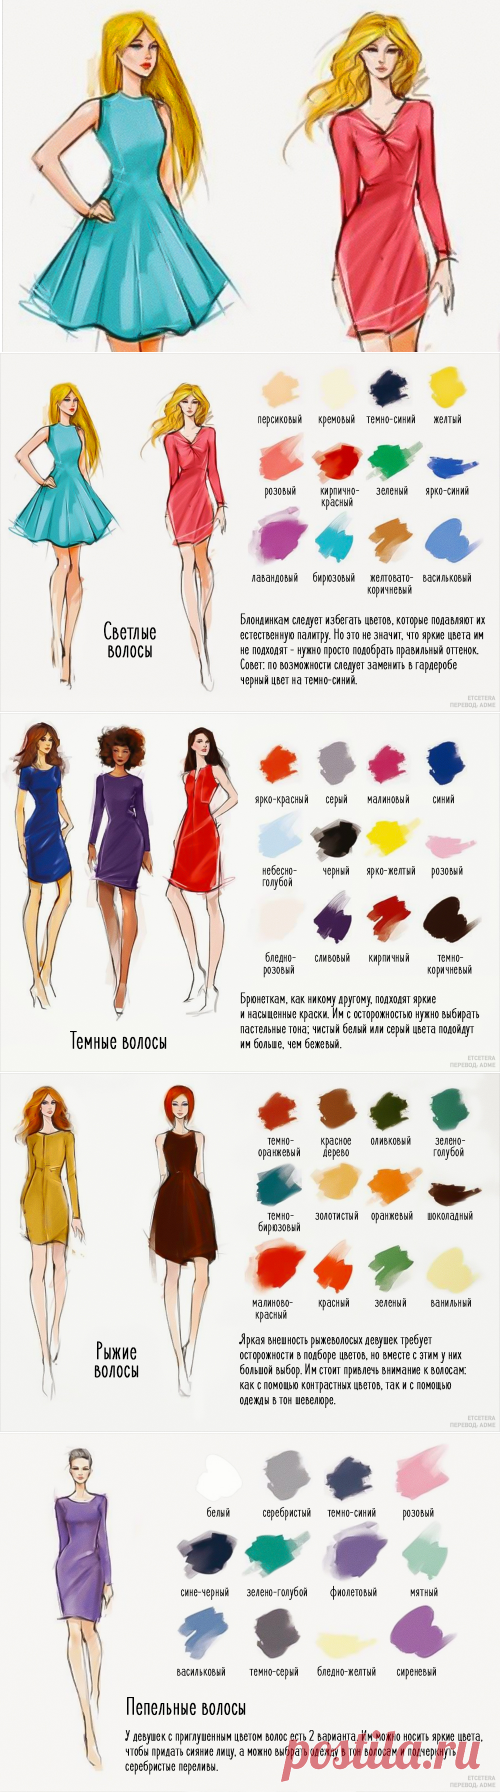 12 идеальных сочетаний цвета одежды и волос | KaifZona.Ru(+)